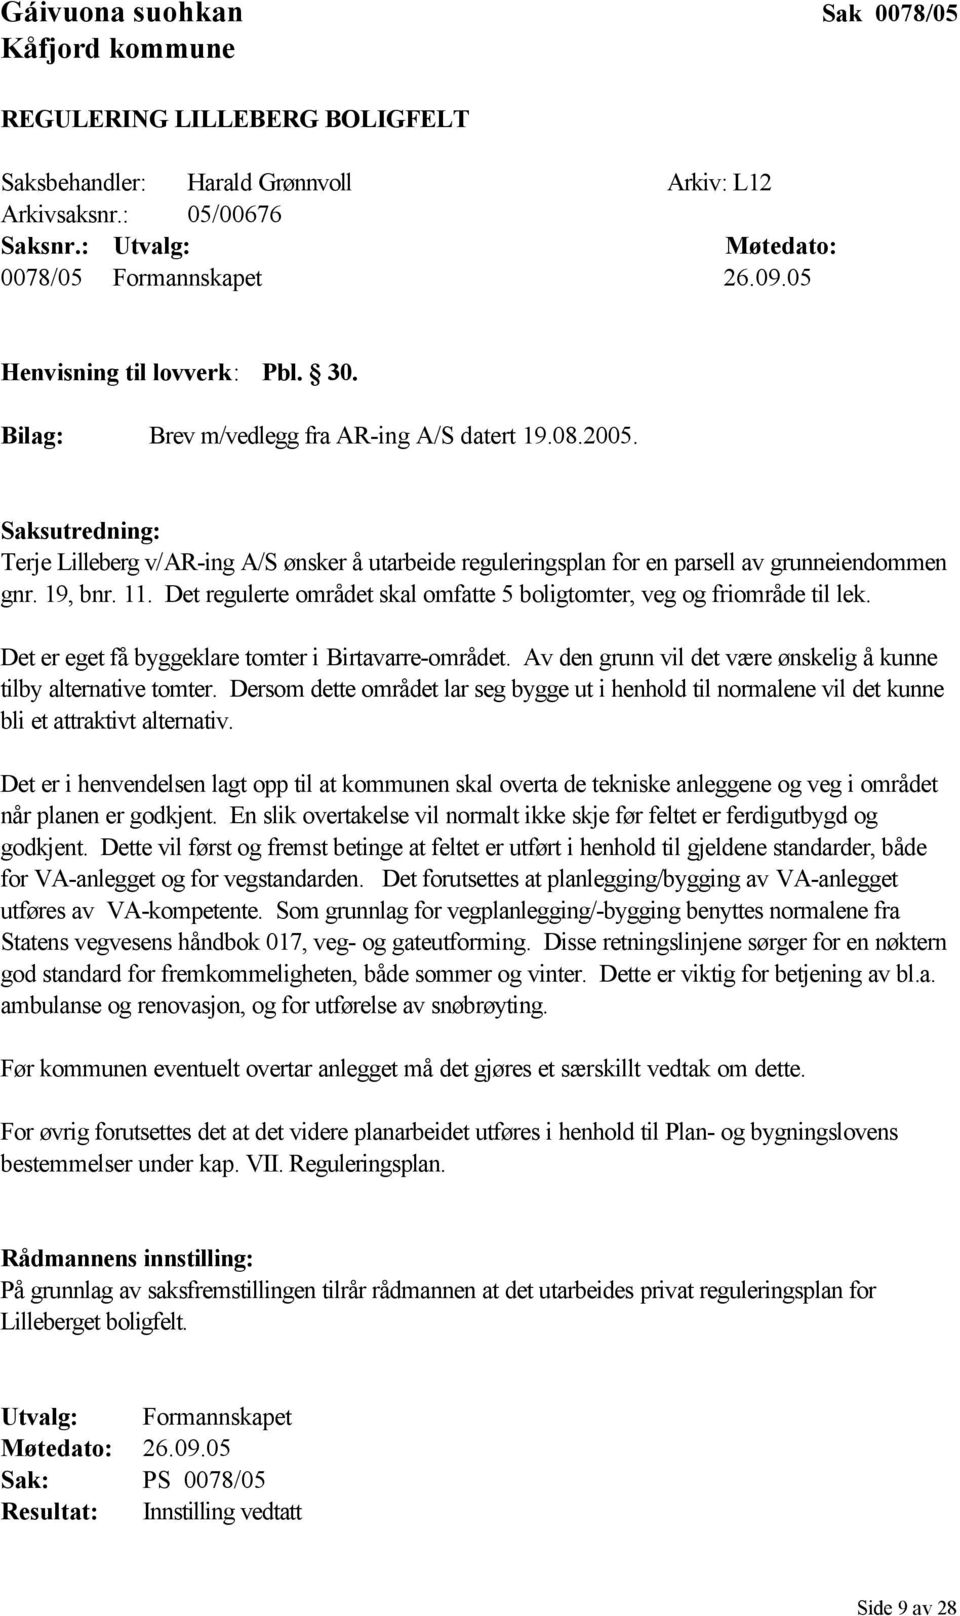 Saksutredning: Terje Lilleberg v/ar-ing A/S ønsker å utarbeide reguleringsplan for en parsell av grunneiendommen gnr. 19, bnr. 11.